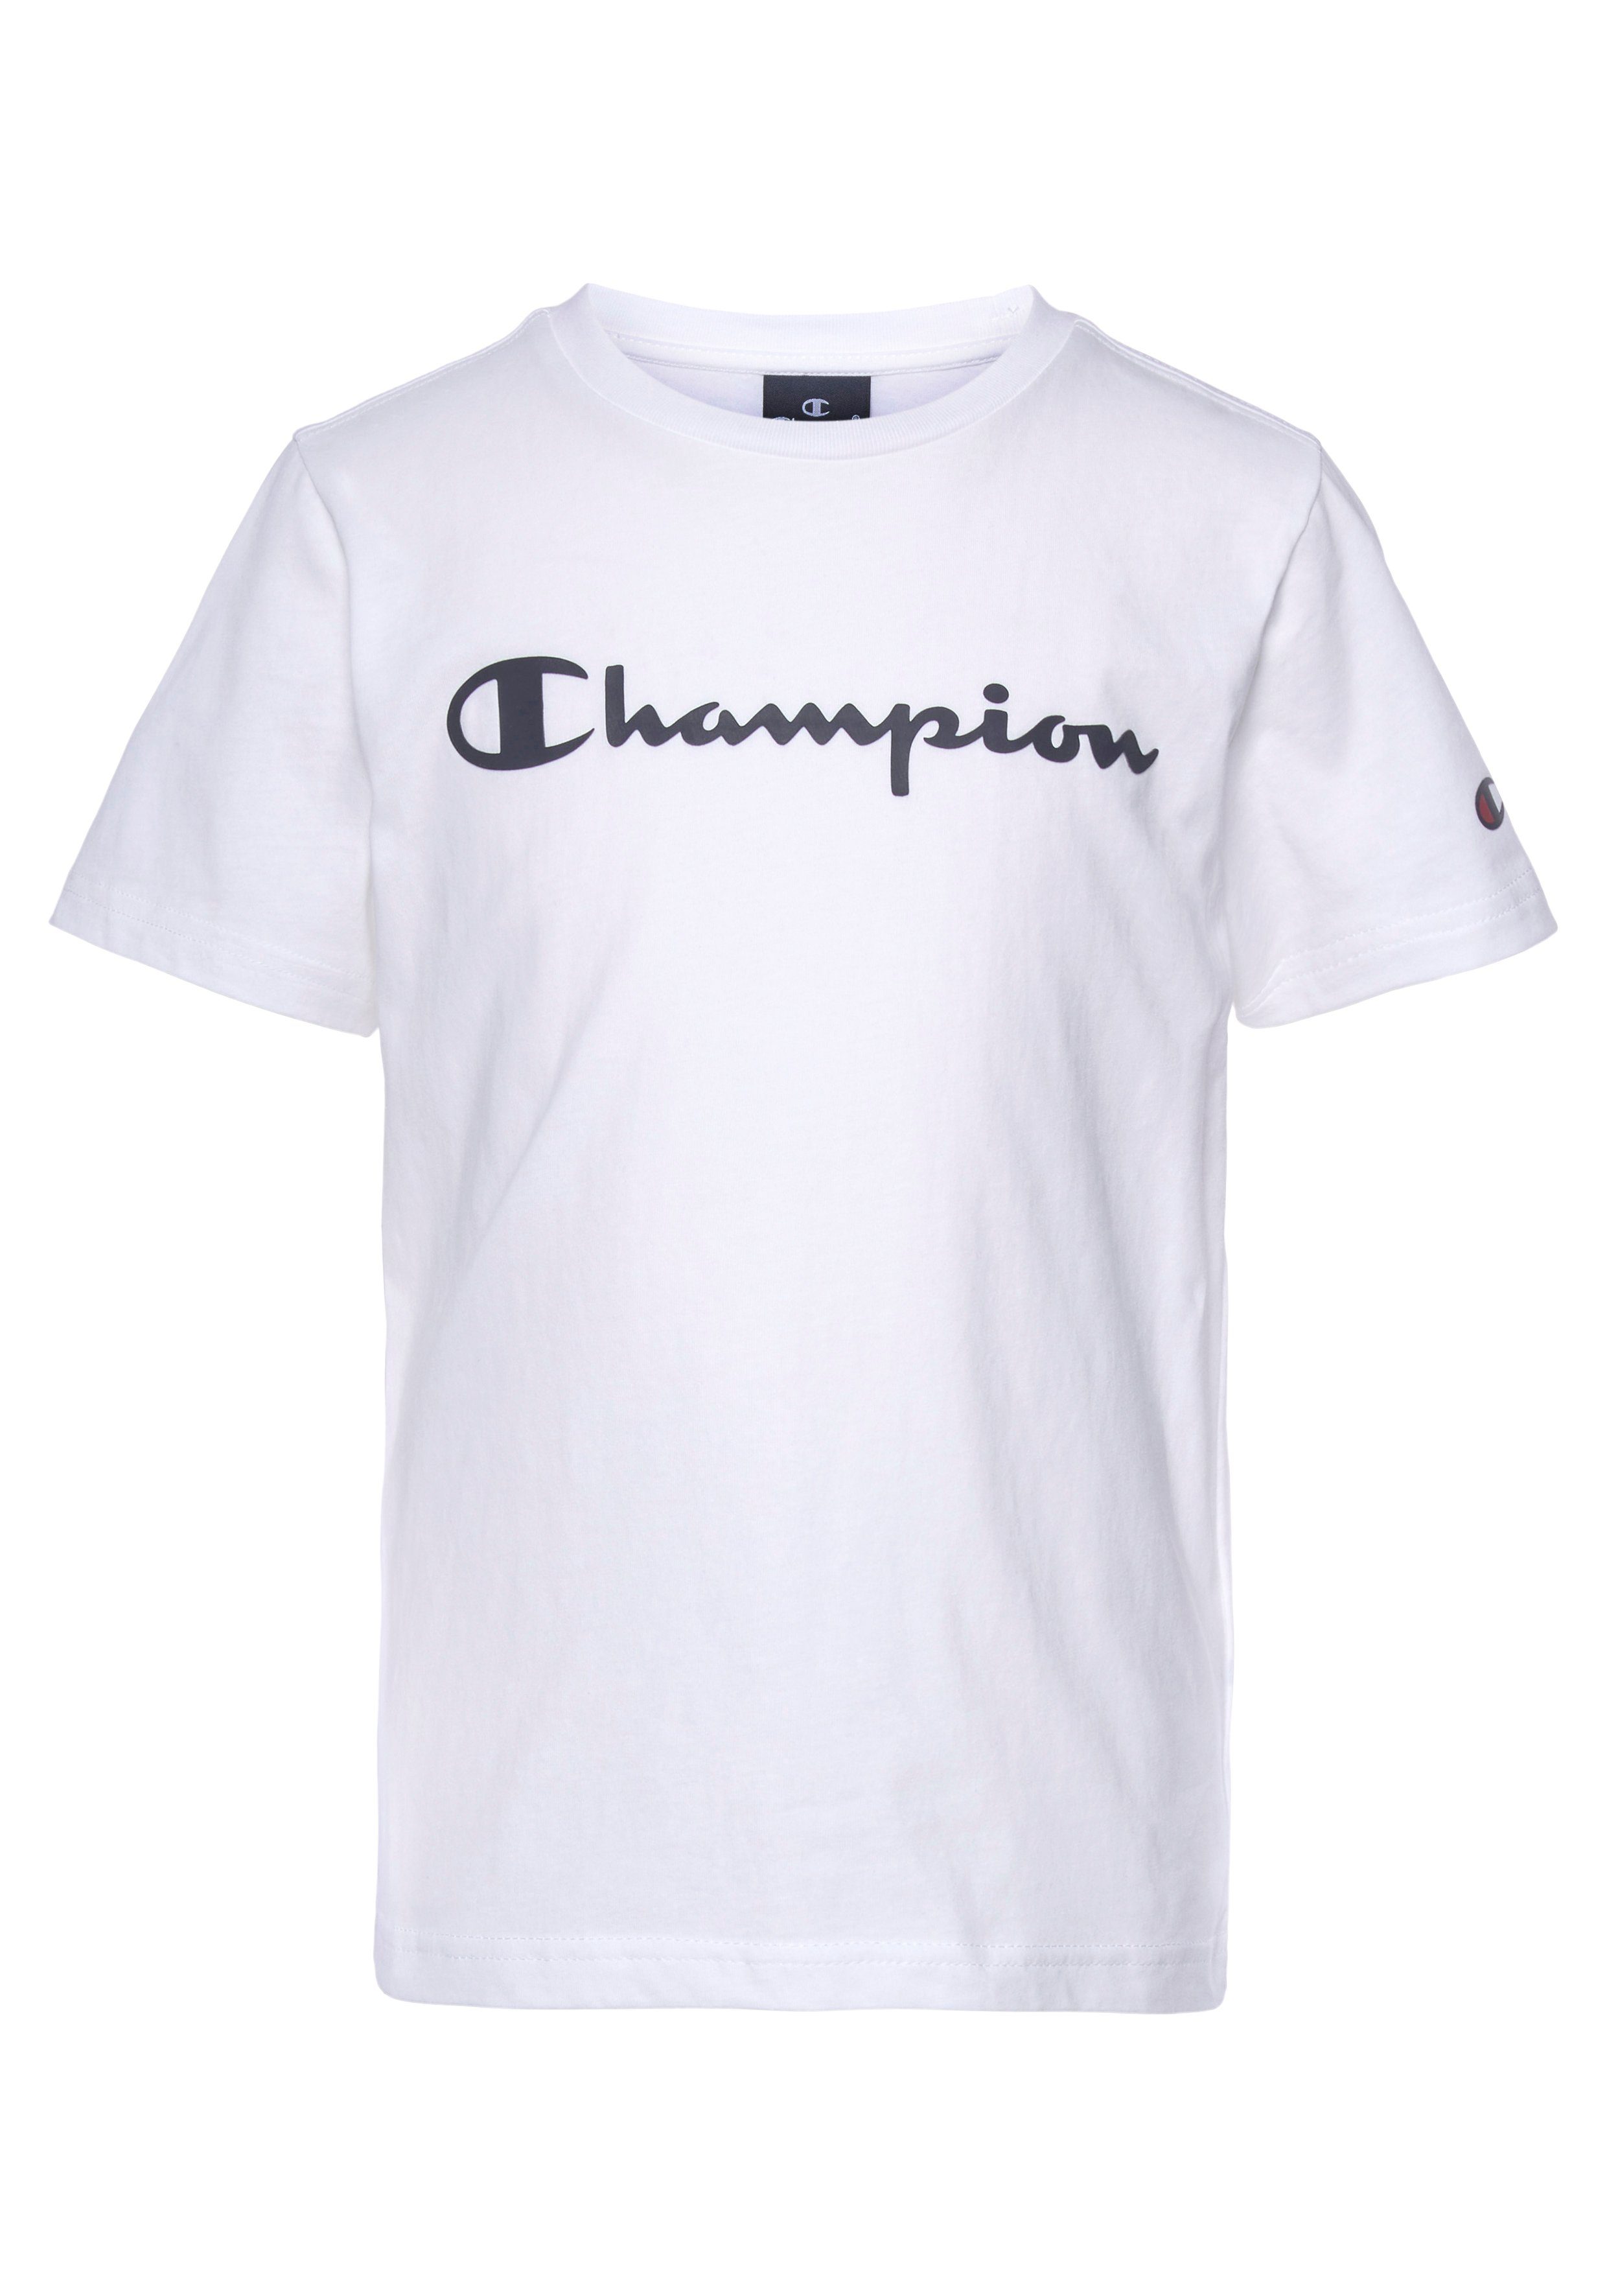 Champion T-Shirt 2Pack Crewneck T-Shirt schwarz-weiß für - Kinder